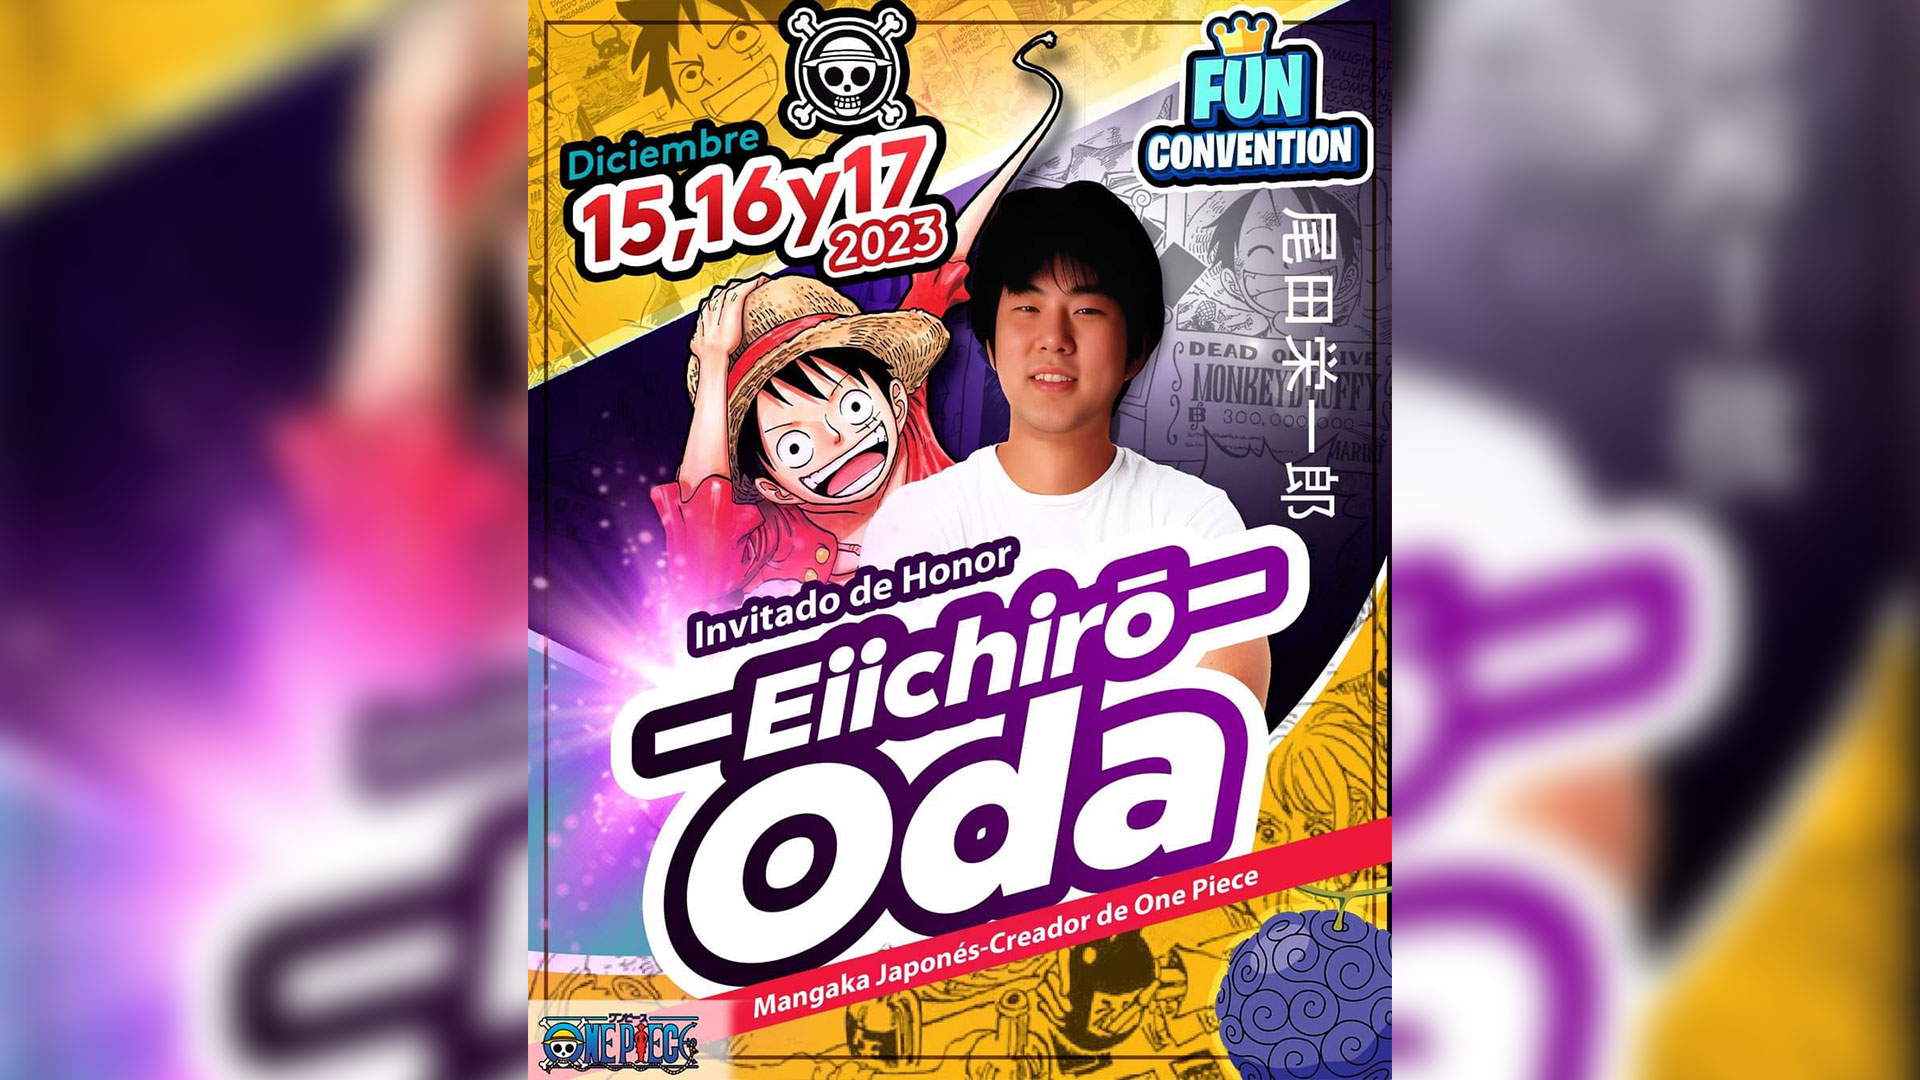 Fun Convention - Banner Oda en México